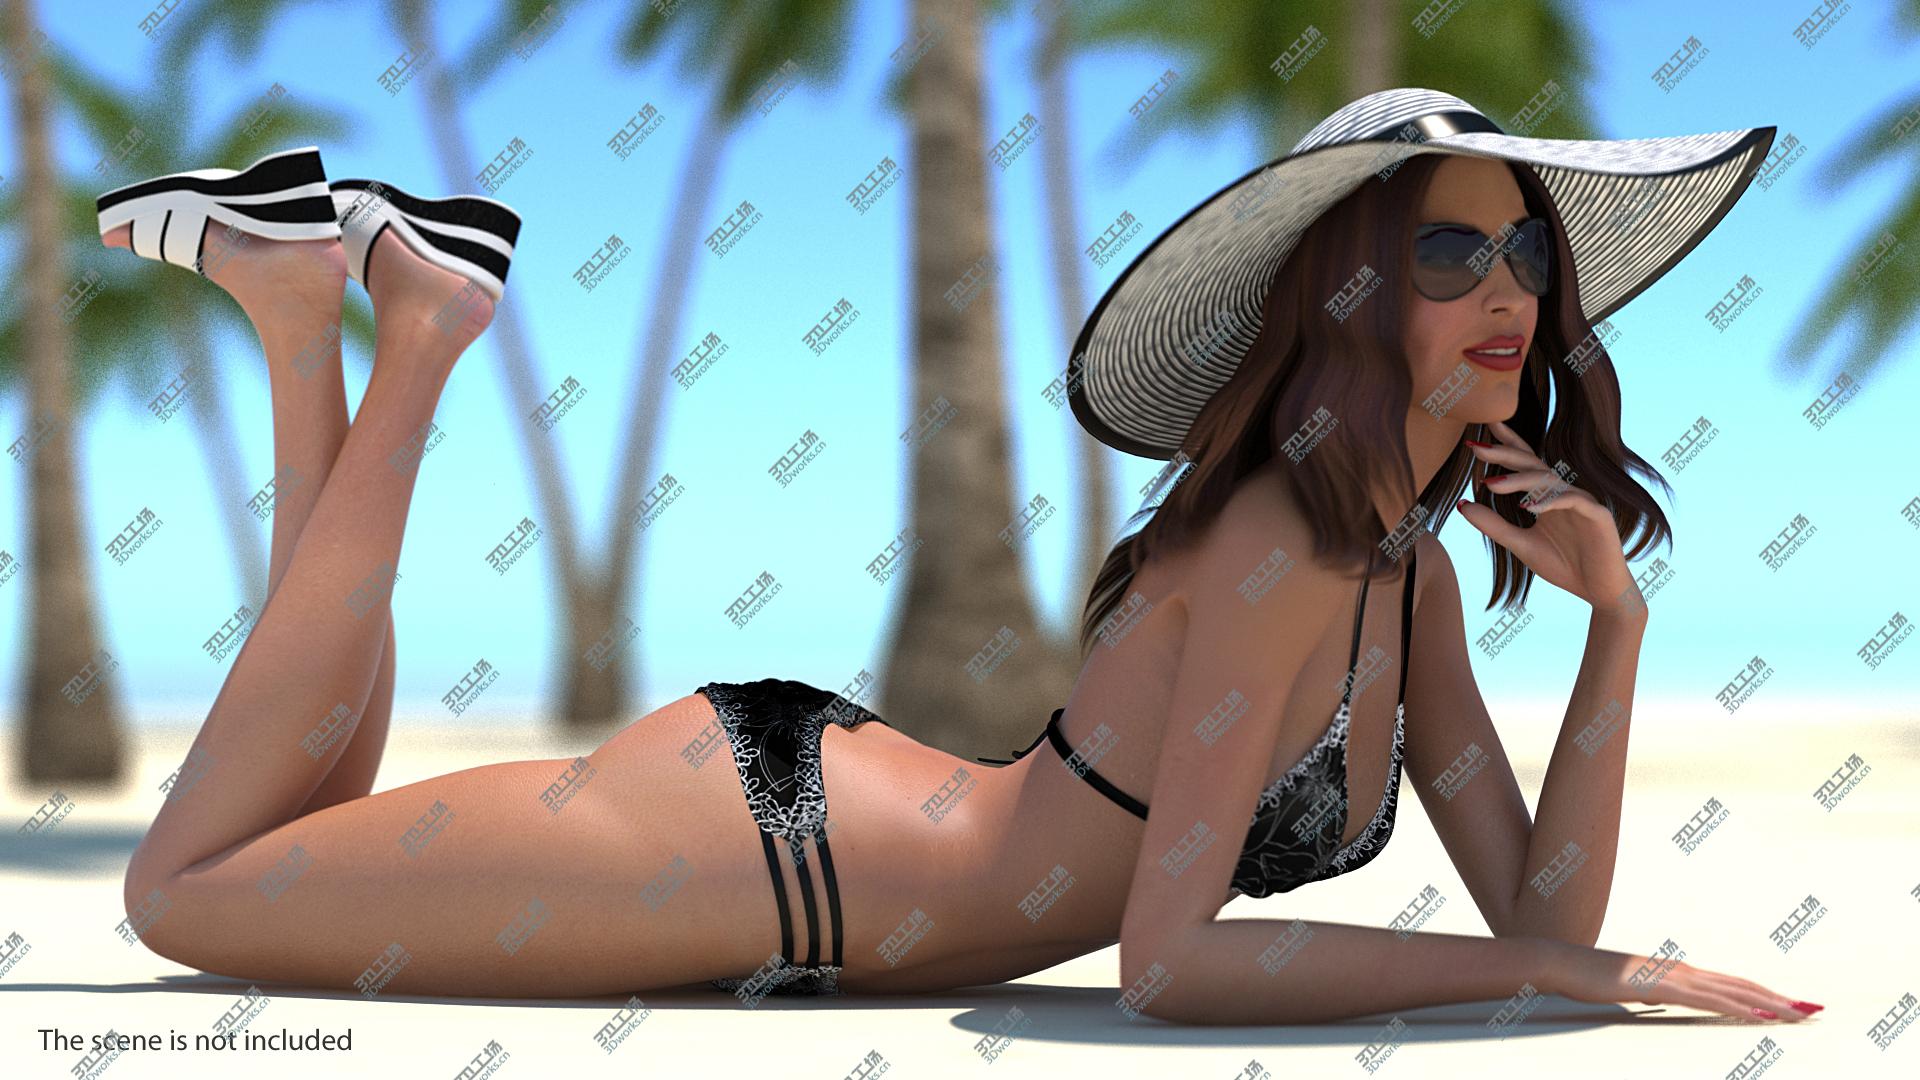 images/goods_img/20210313/3D Bikini Girl Lying Pose model/2.jpg